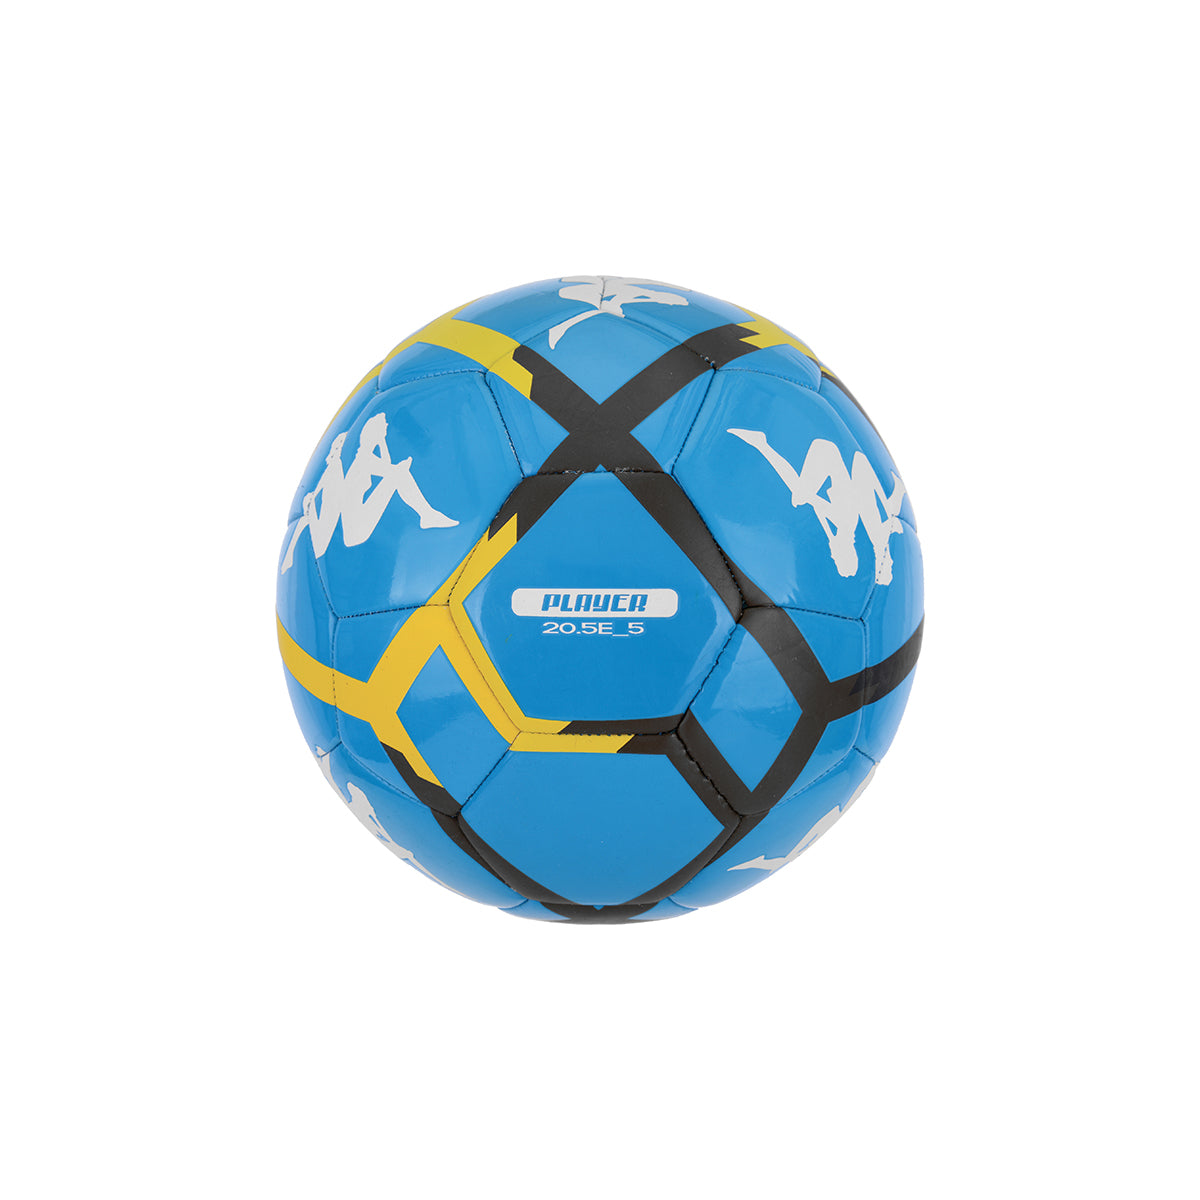 Ballon de football Player 20.5E Bleu Unisexe - image 1